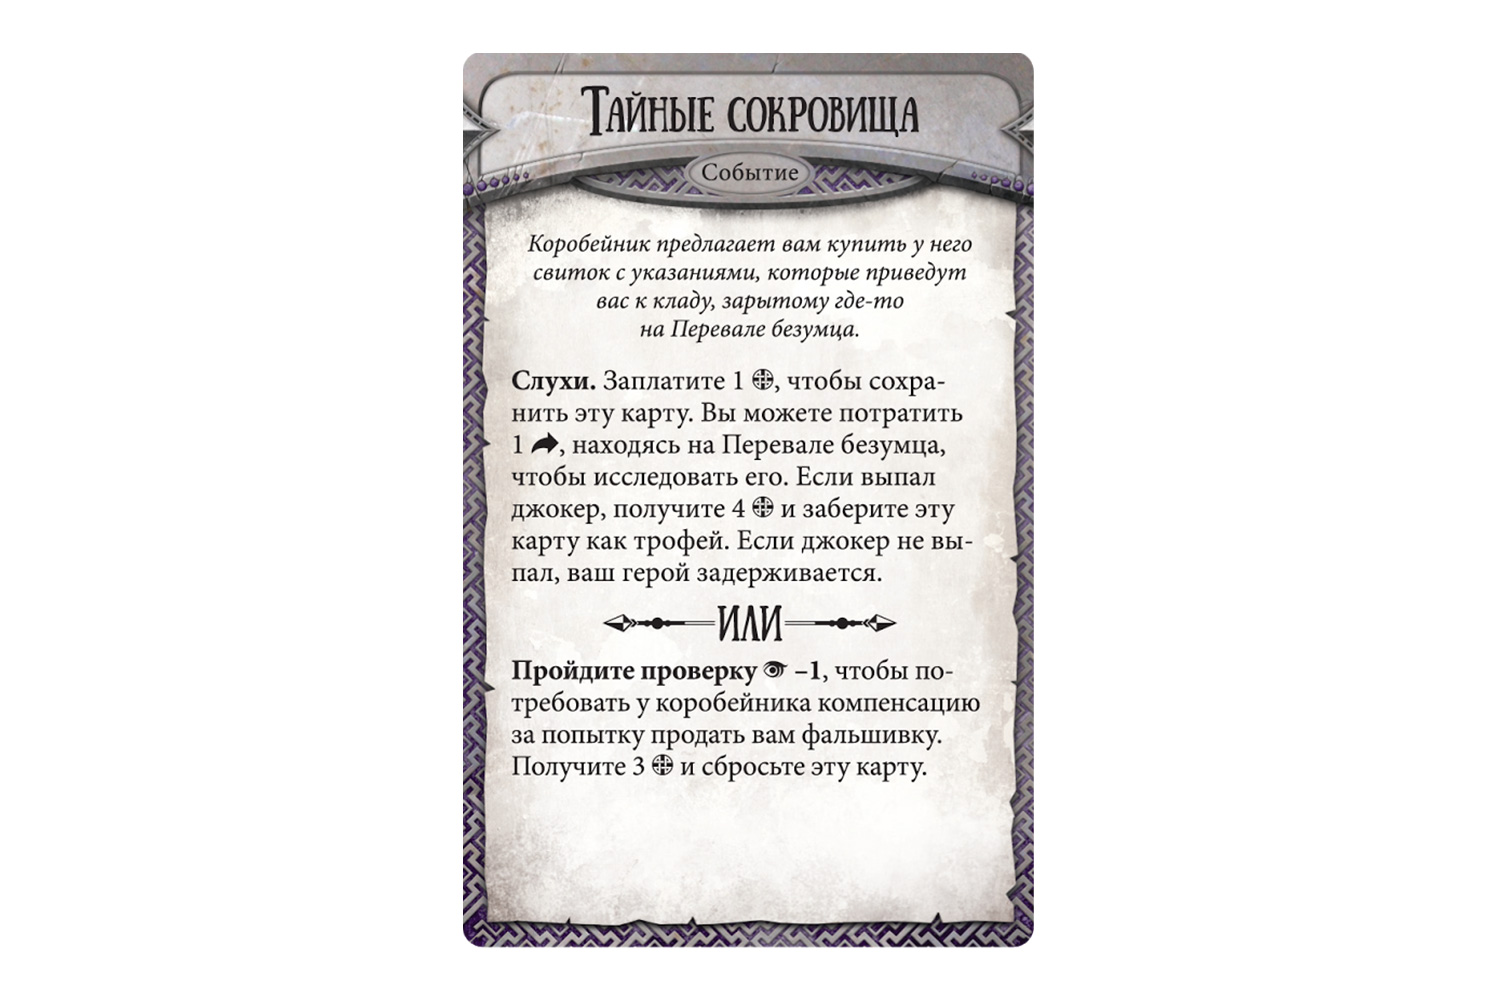 Карточка настольной игры Runebound. Третья редакция